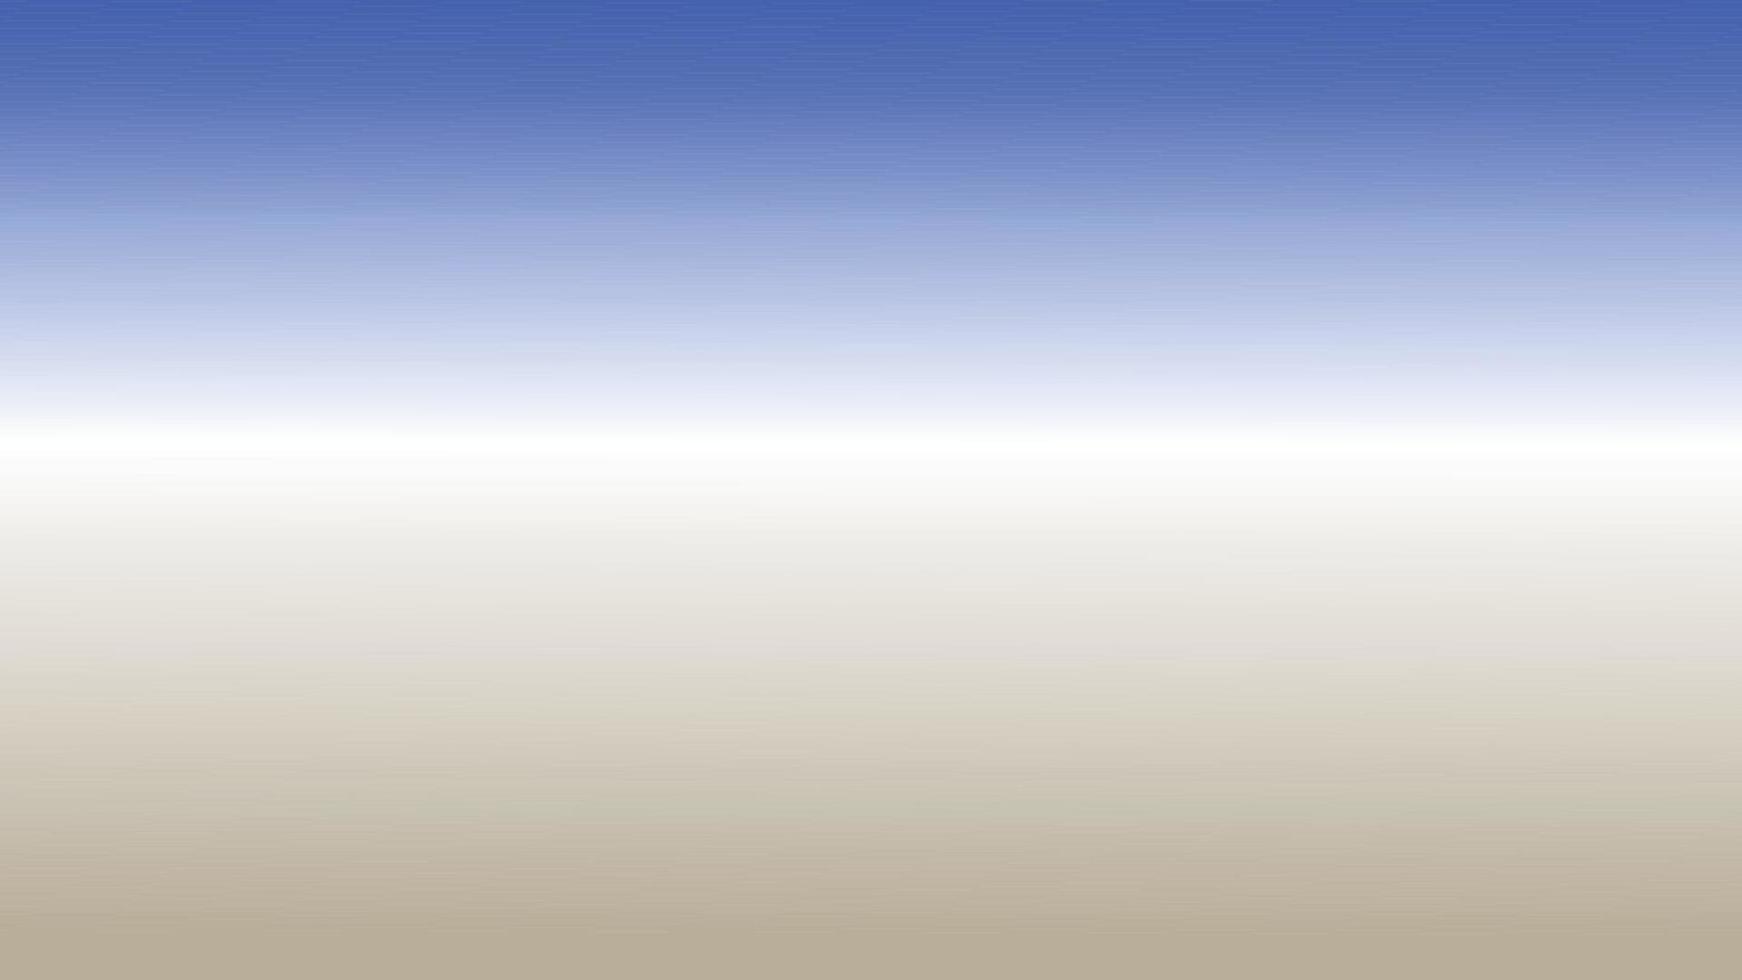 blu grigio pendenza colore con centro leggero per sfondi, striscioni, modelli e ragnatela disegni. astratto sfondo vettore